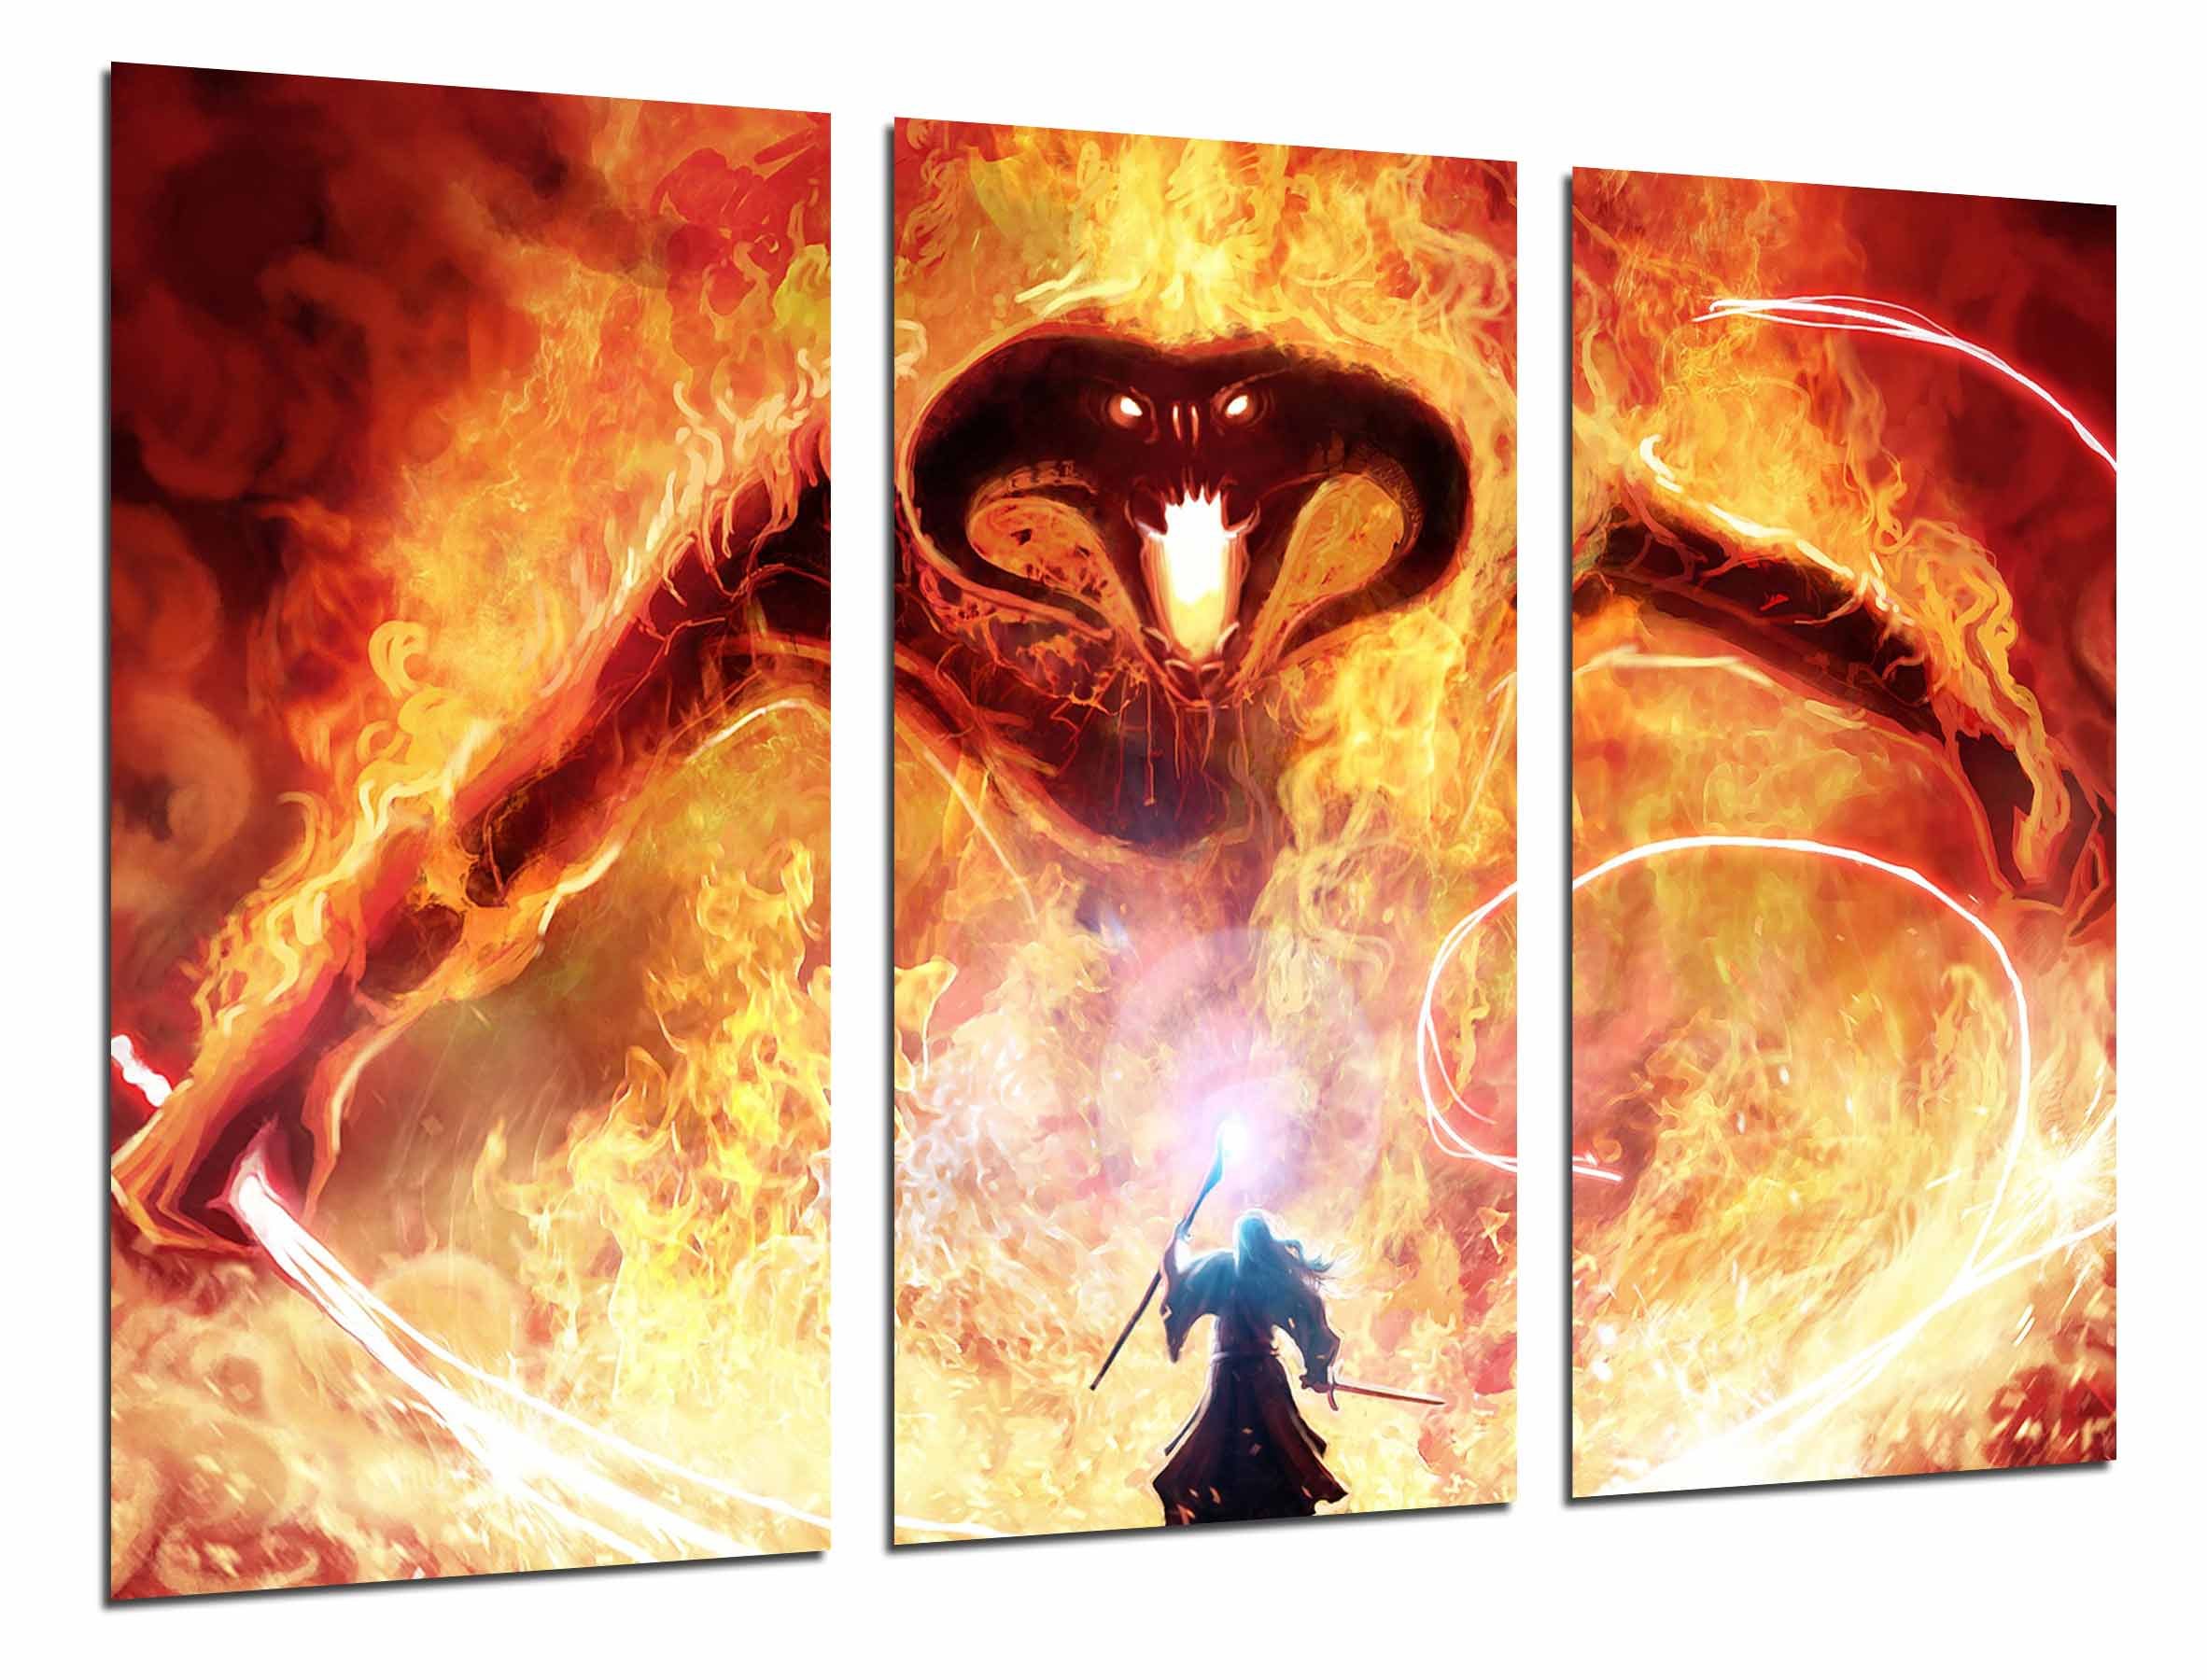 Kunstdruck mit Rahmen, Motiv Gandalf Kampf gegen Dämon des Feuers, Gesamtgröße: 96,5 x 61 cm, gerahmt und aufhängfertig, Ref. 26598